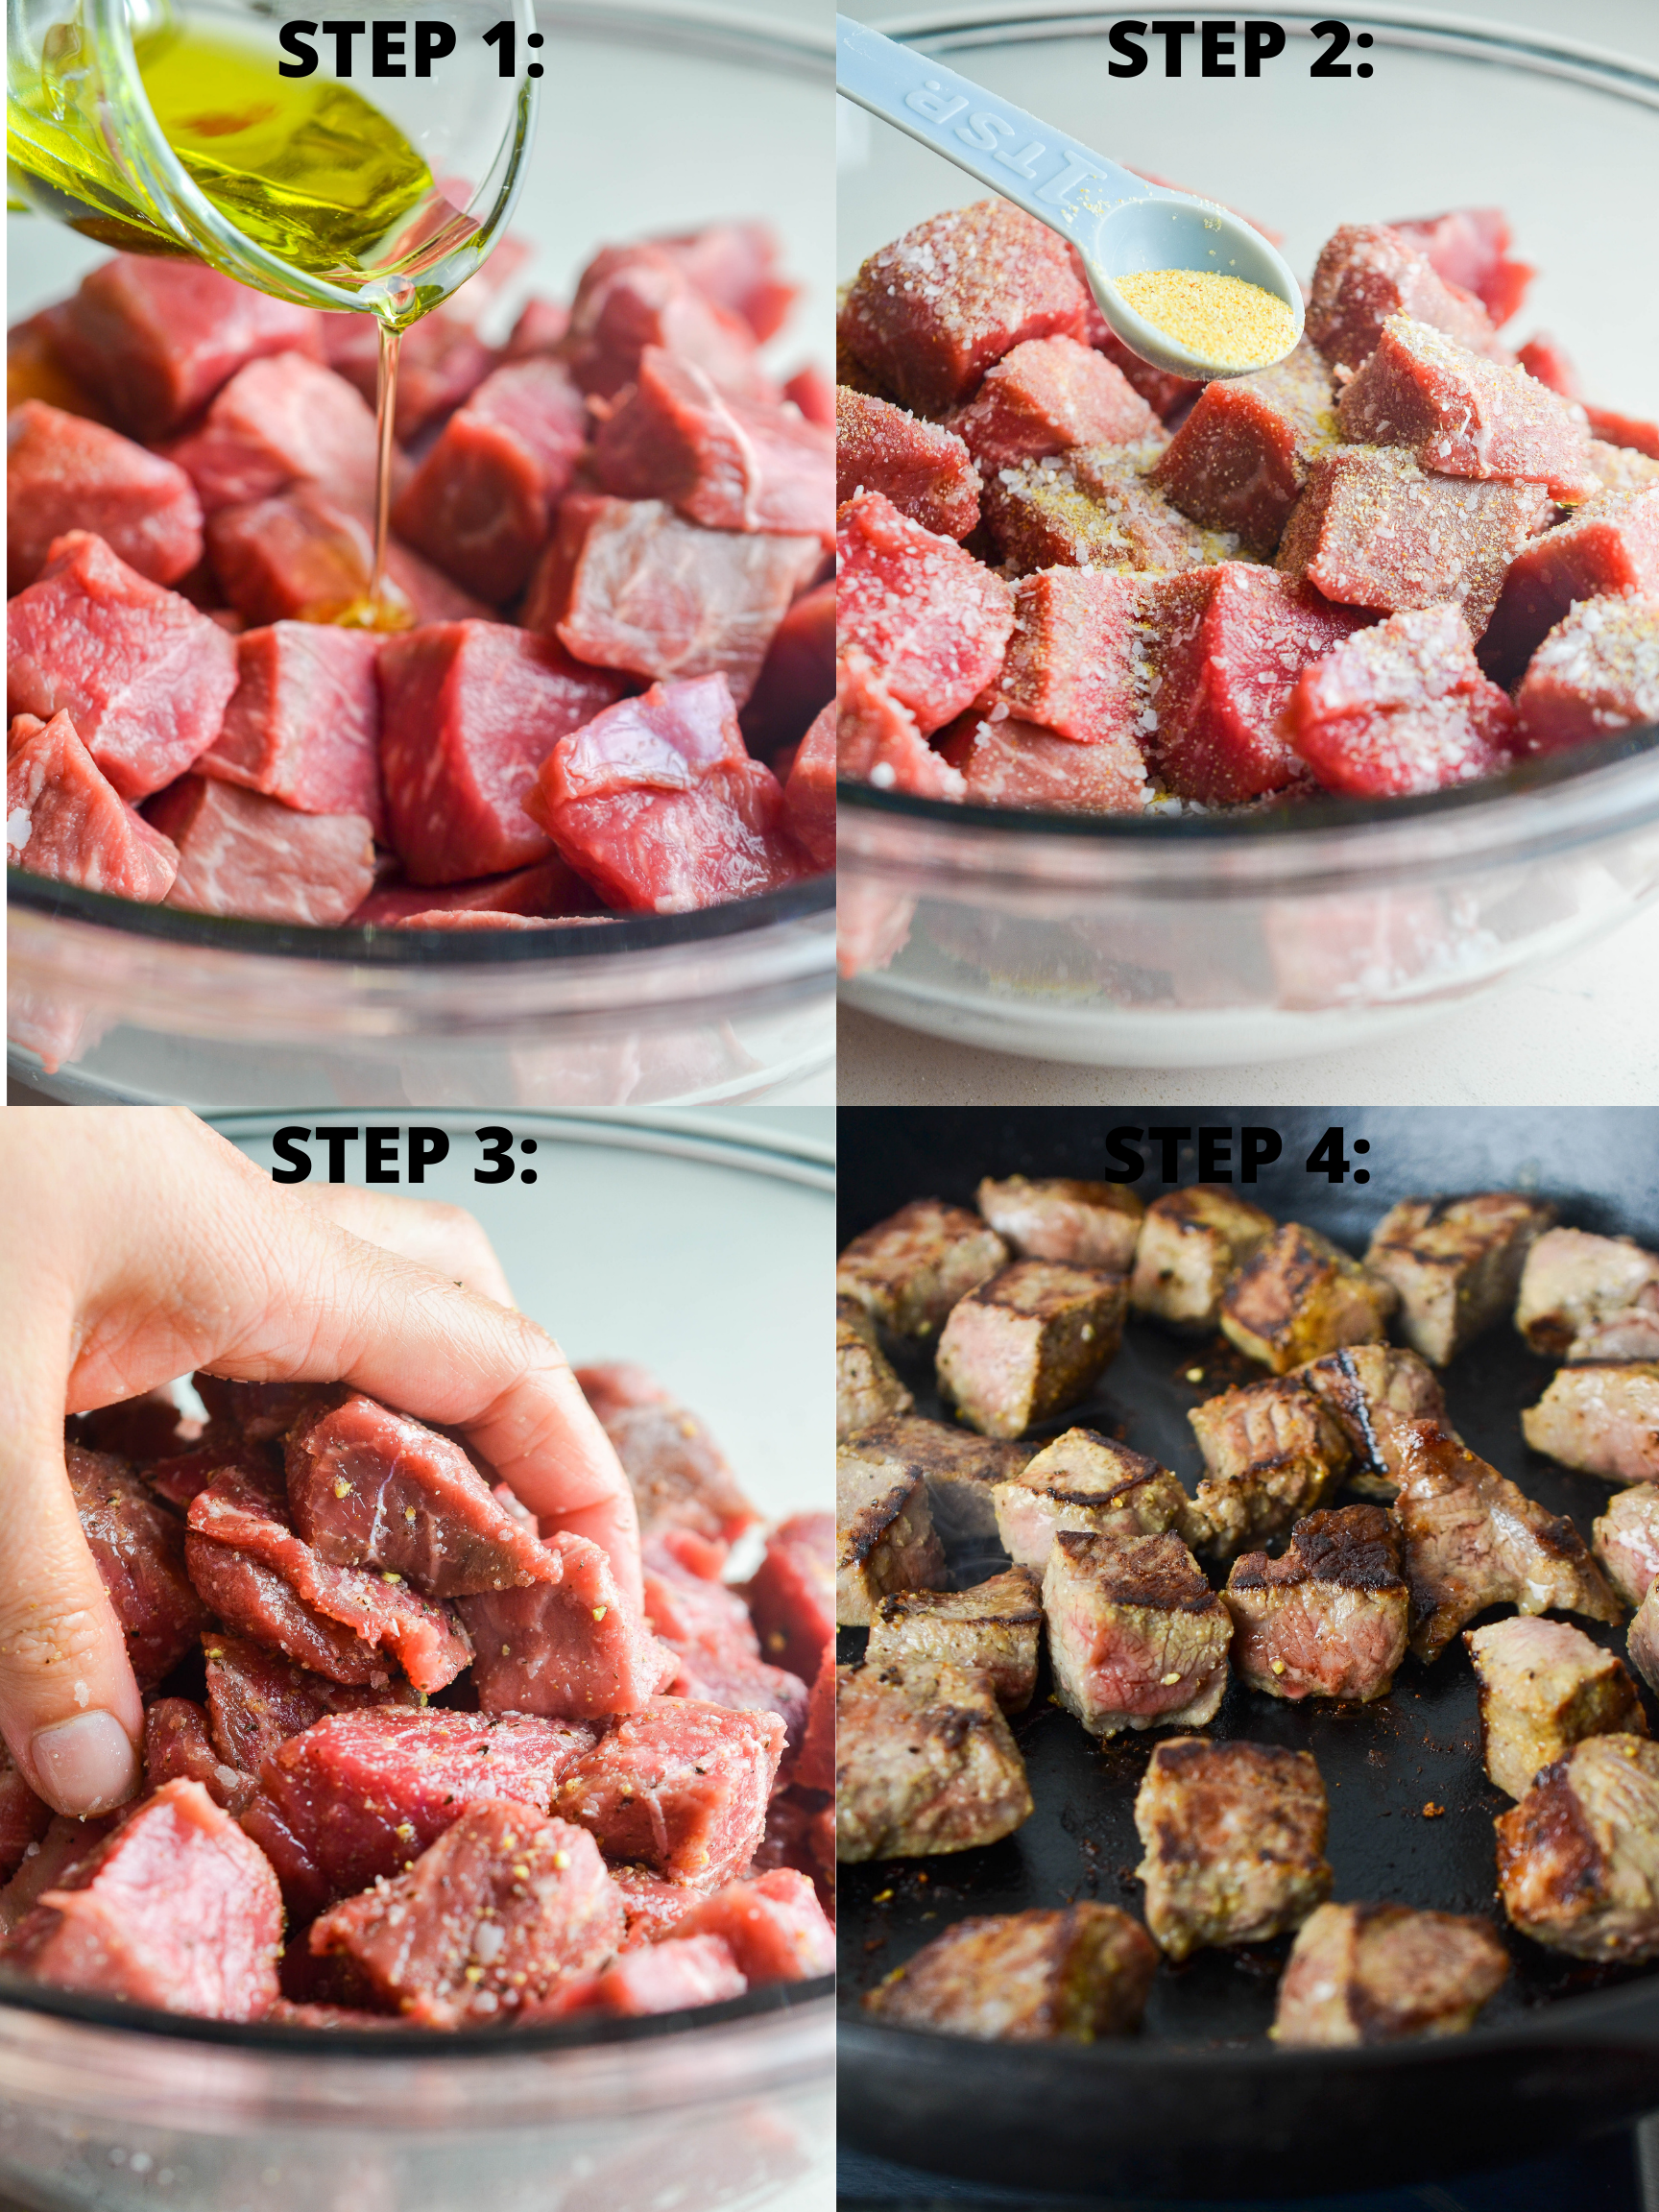 Step by step photos of garlic steak bites.